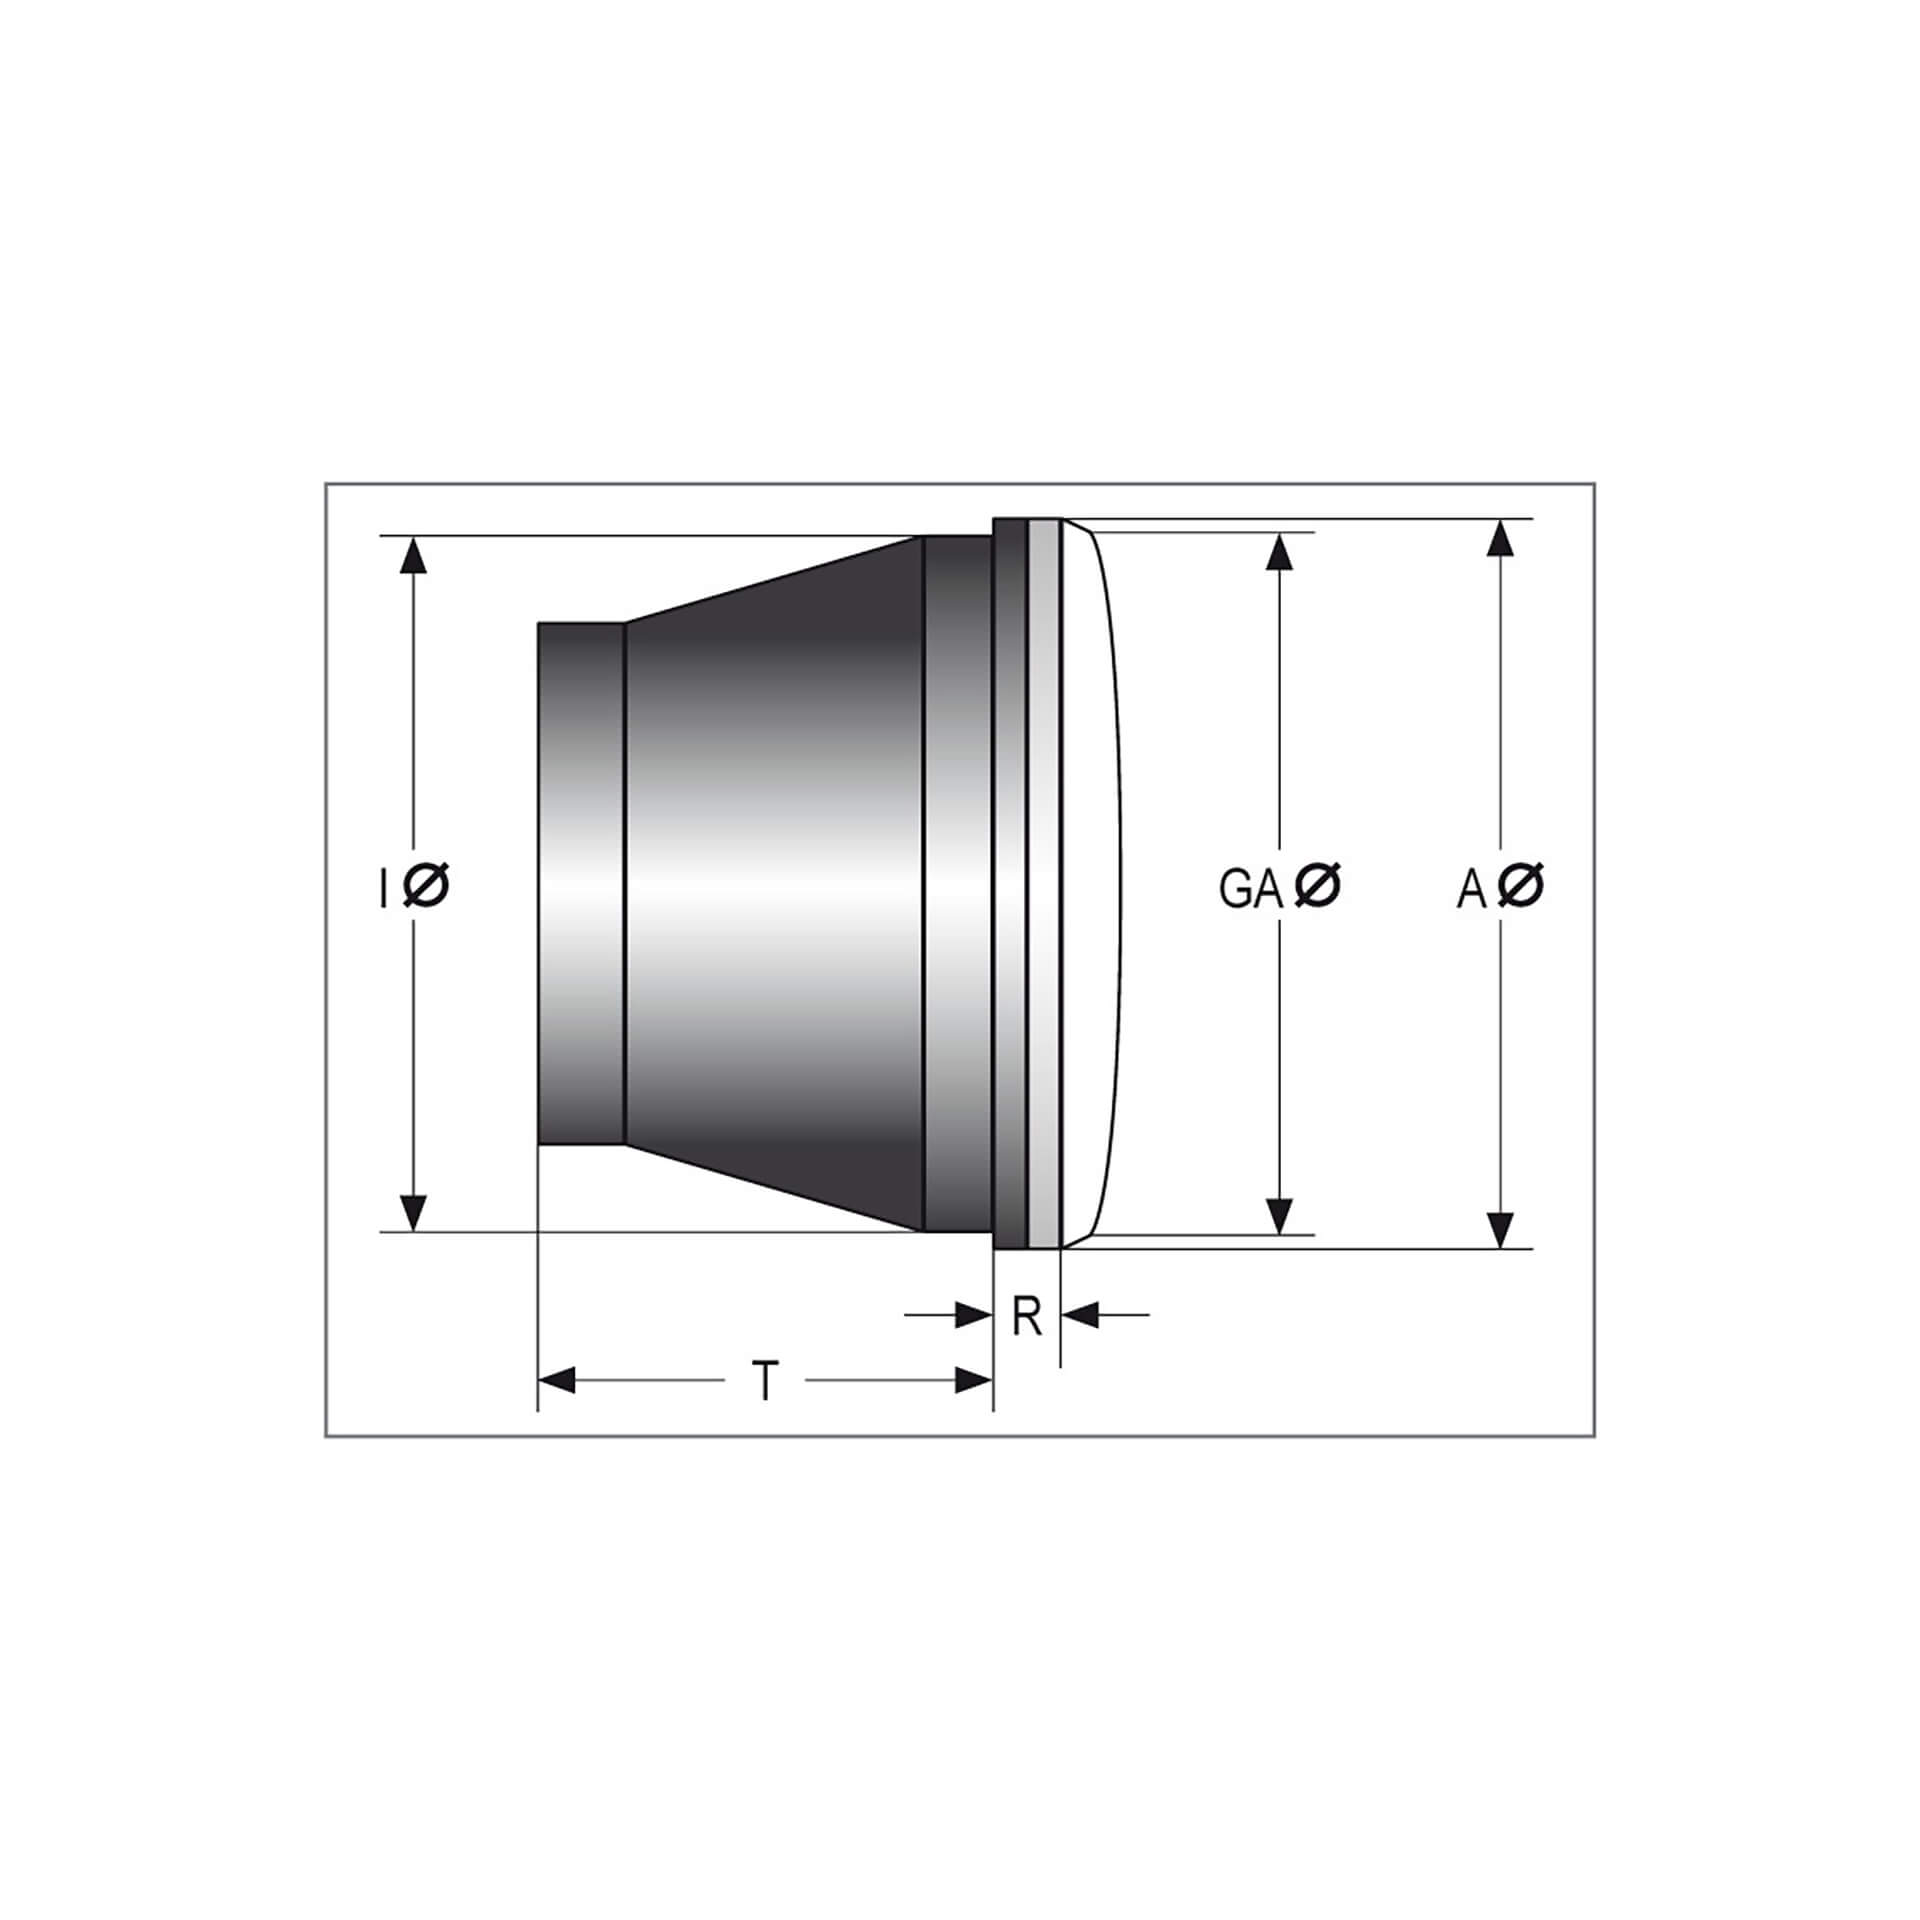 shin_yo Fernscheinwerfereinsatz mit Standlicht, Metall, 90mm für H 4 Birne, gepr. Glas